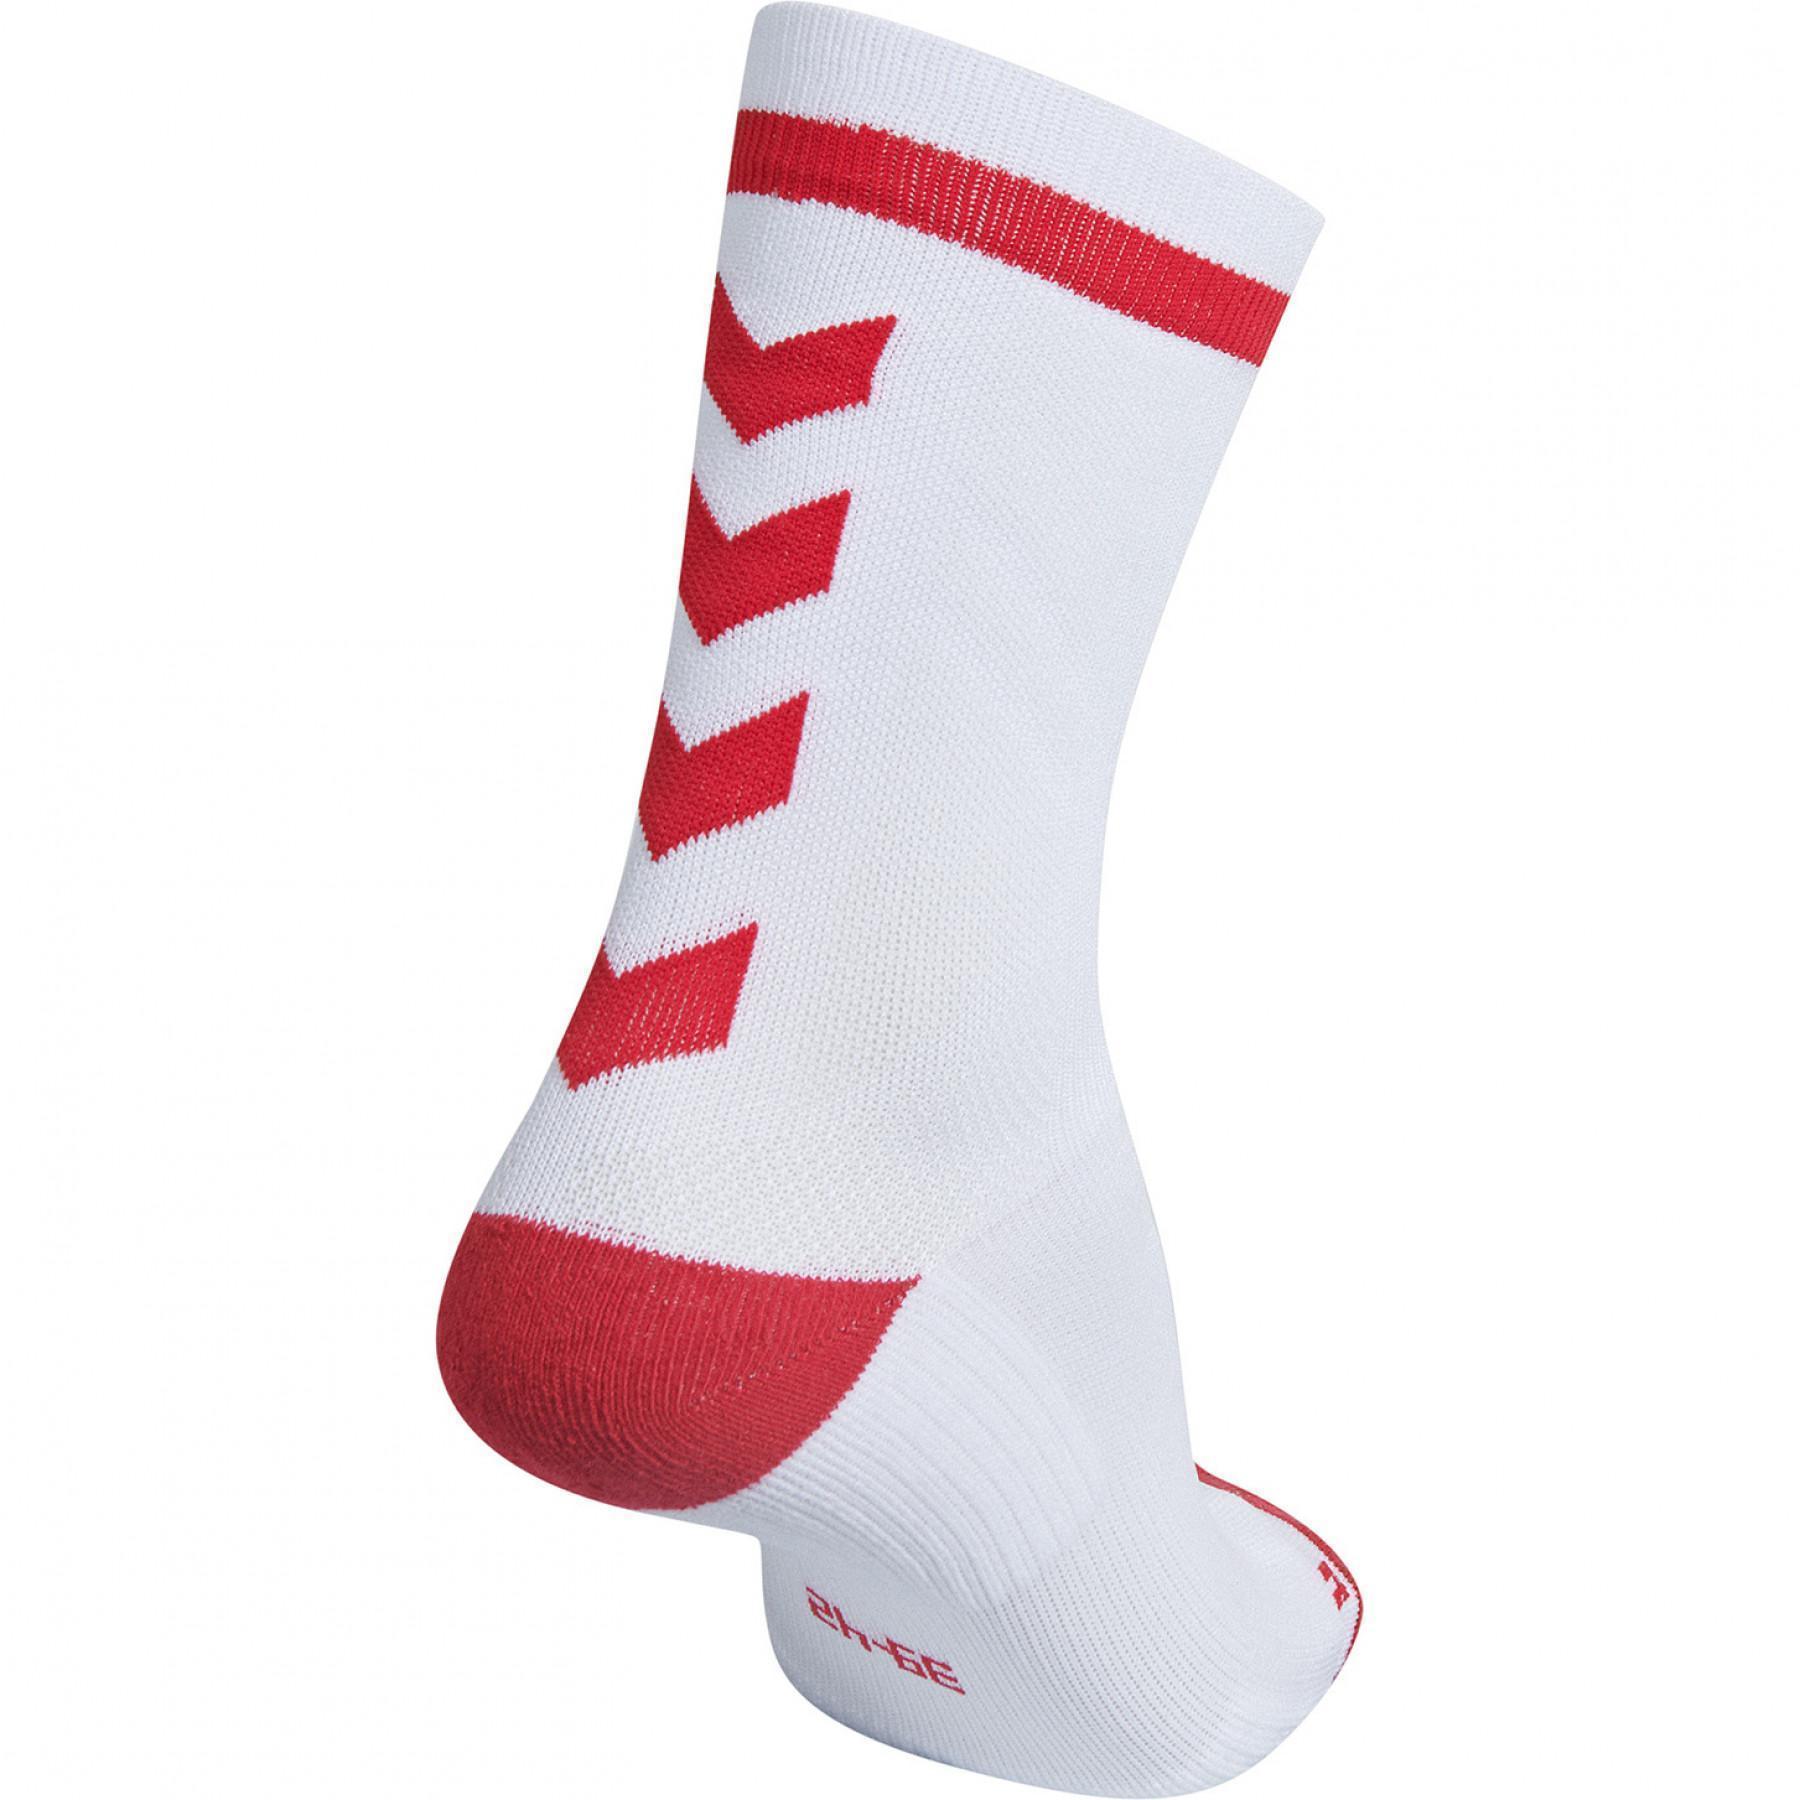 Calzini Hummel elite indoor sock low